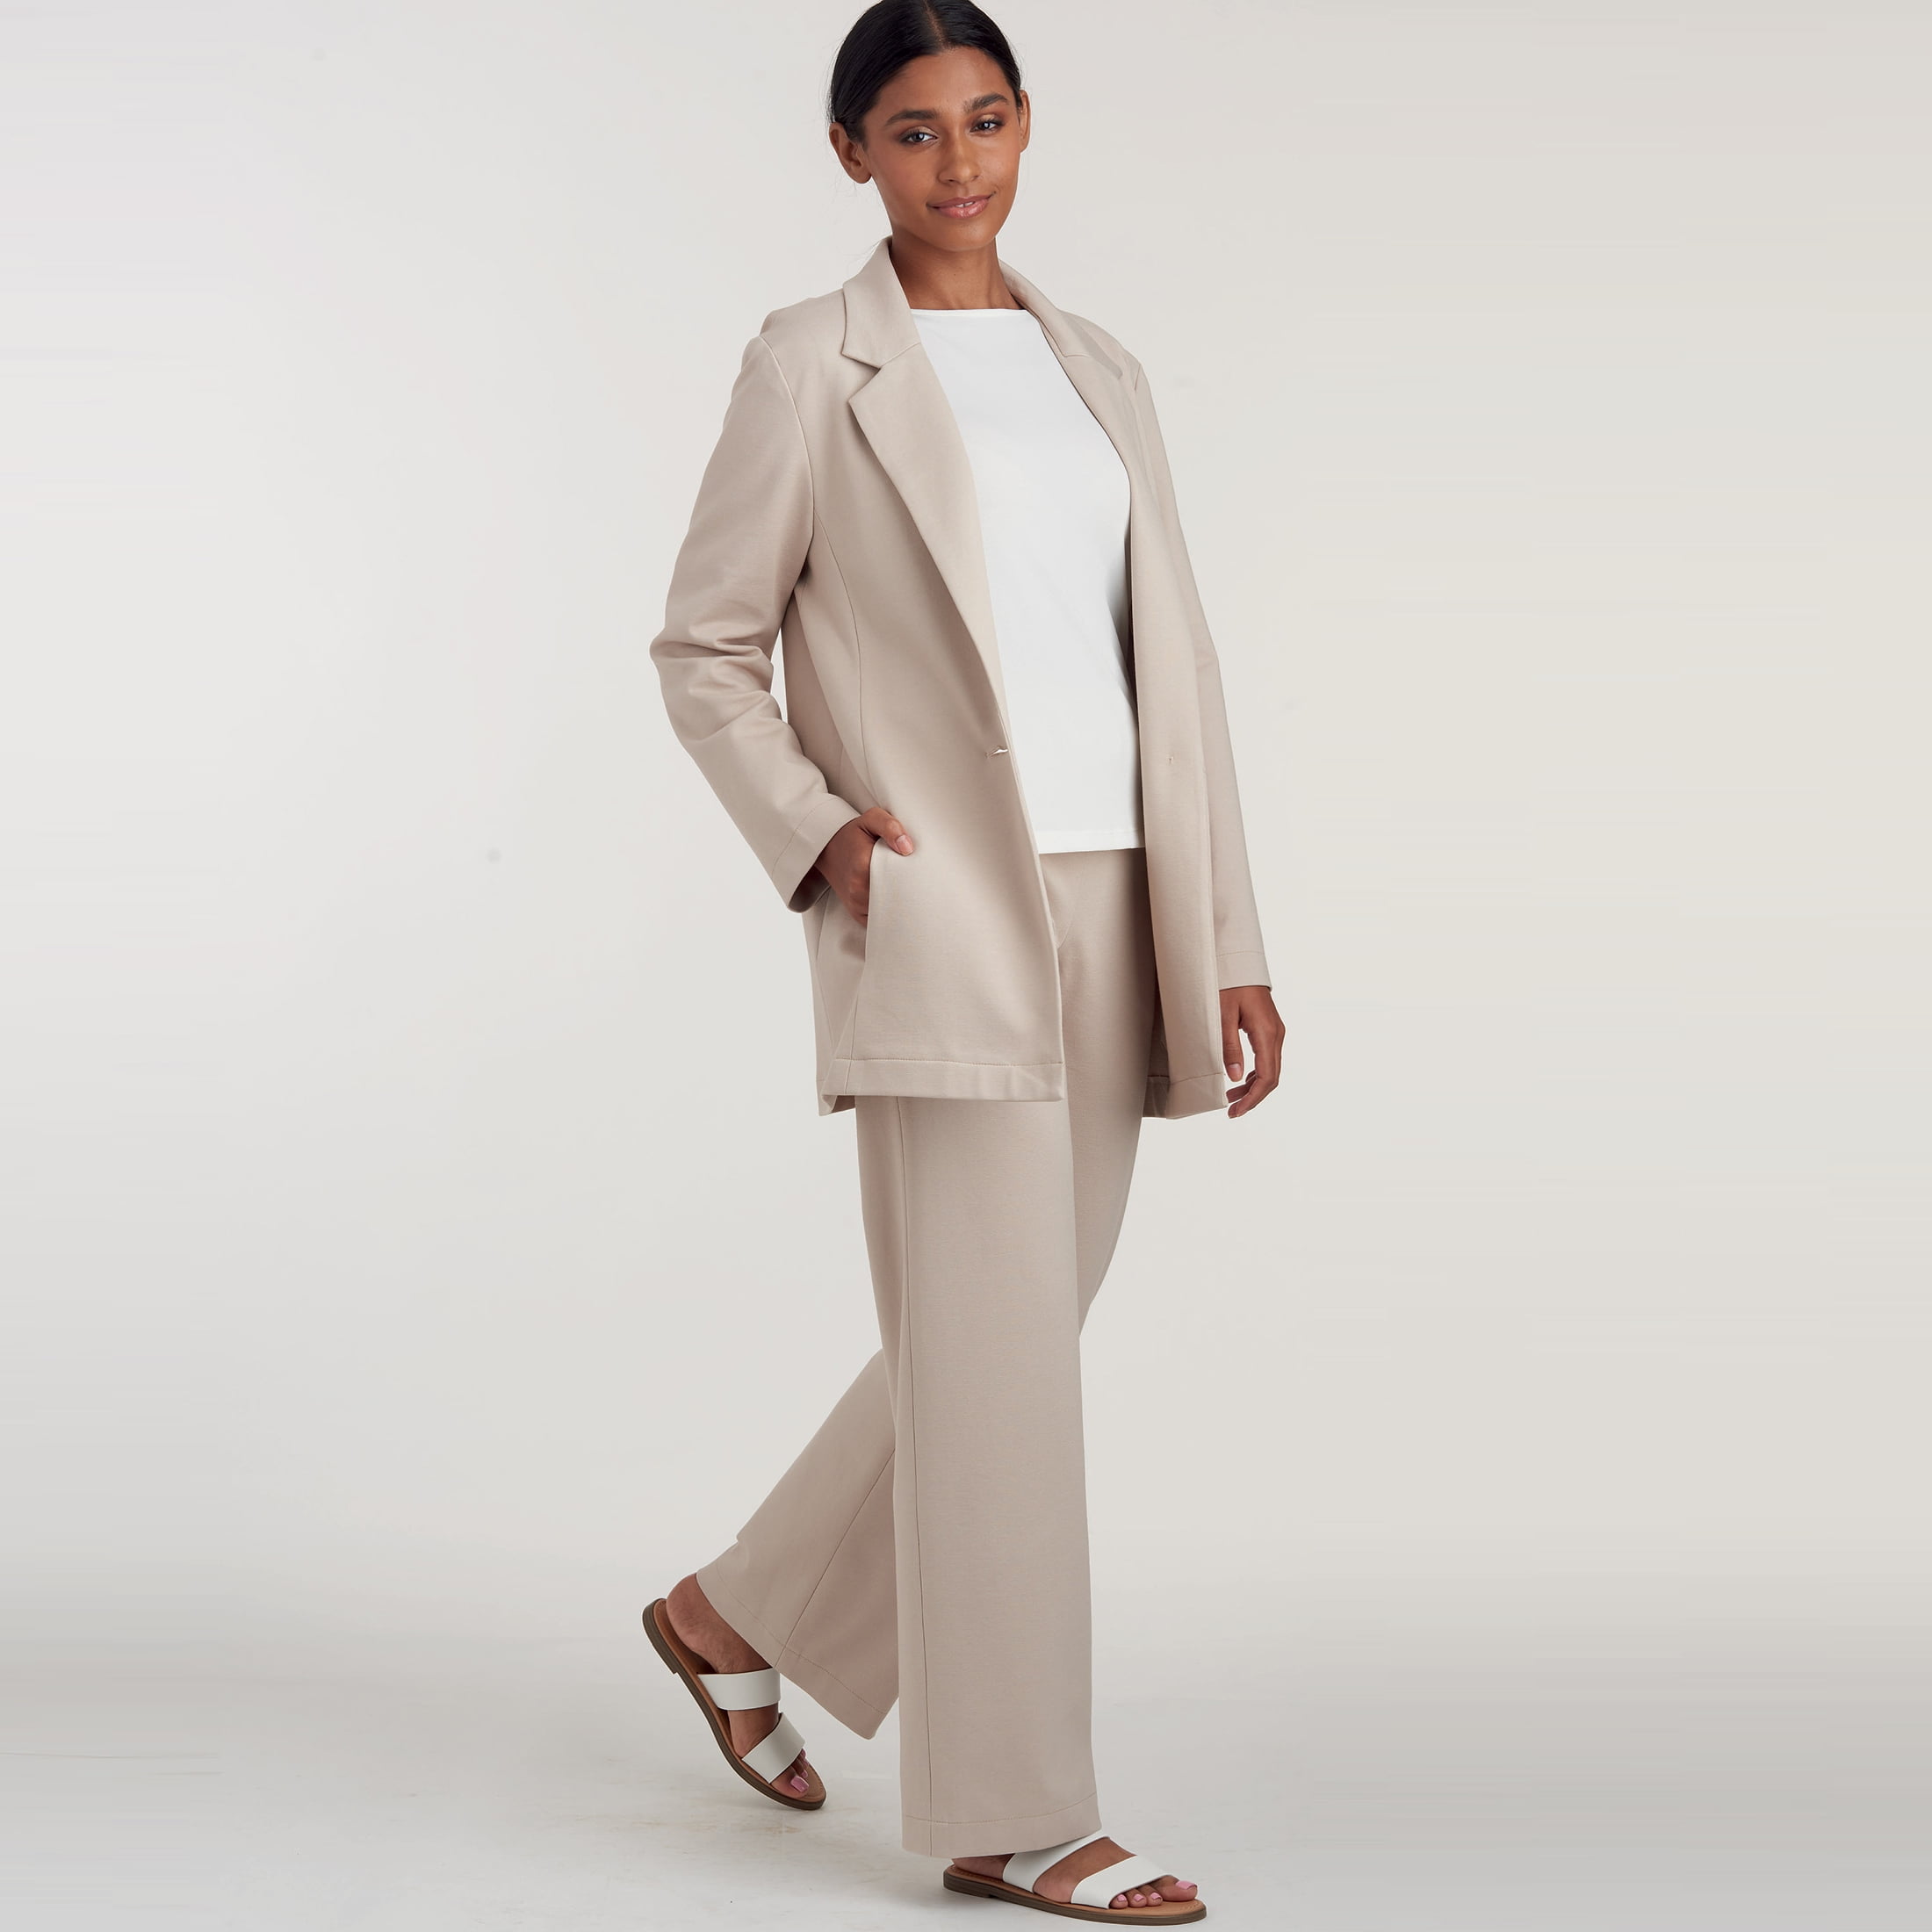 Knit Vest Misses' Pants Simplicity S9018 Dress or Top